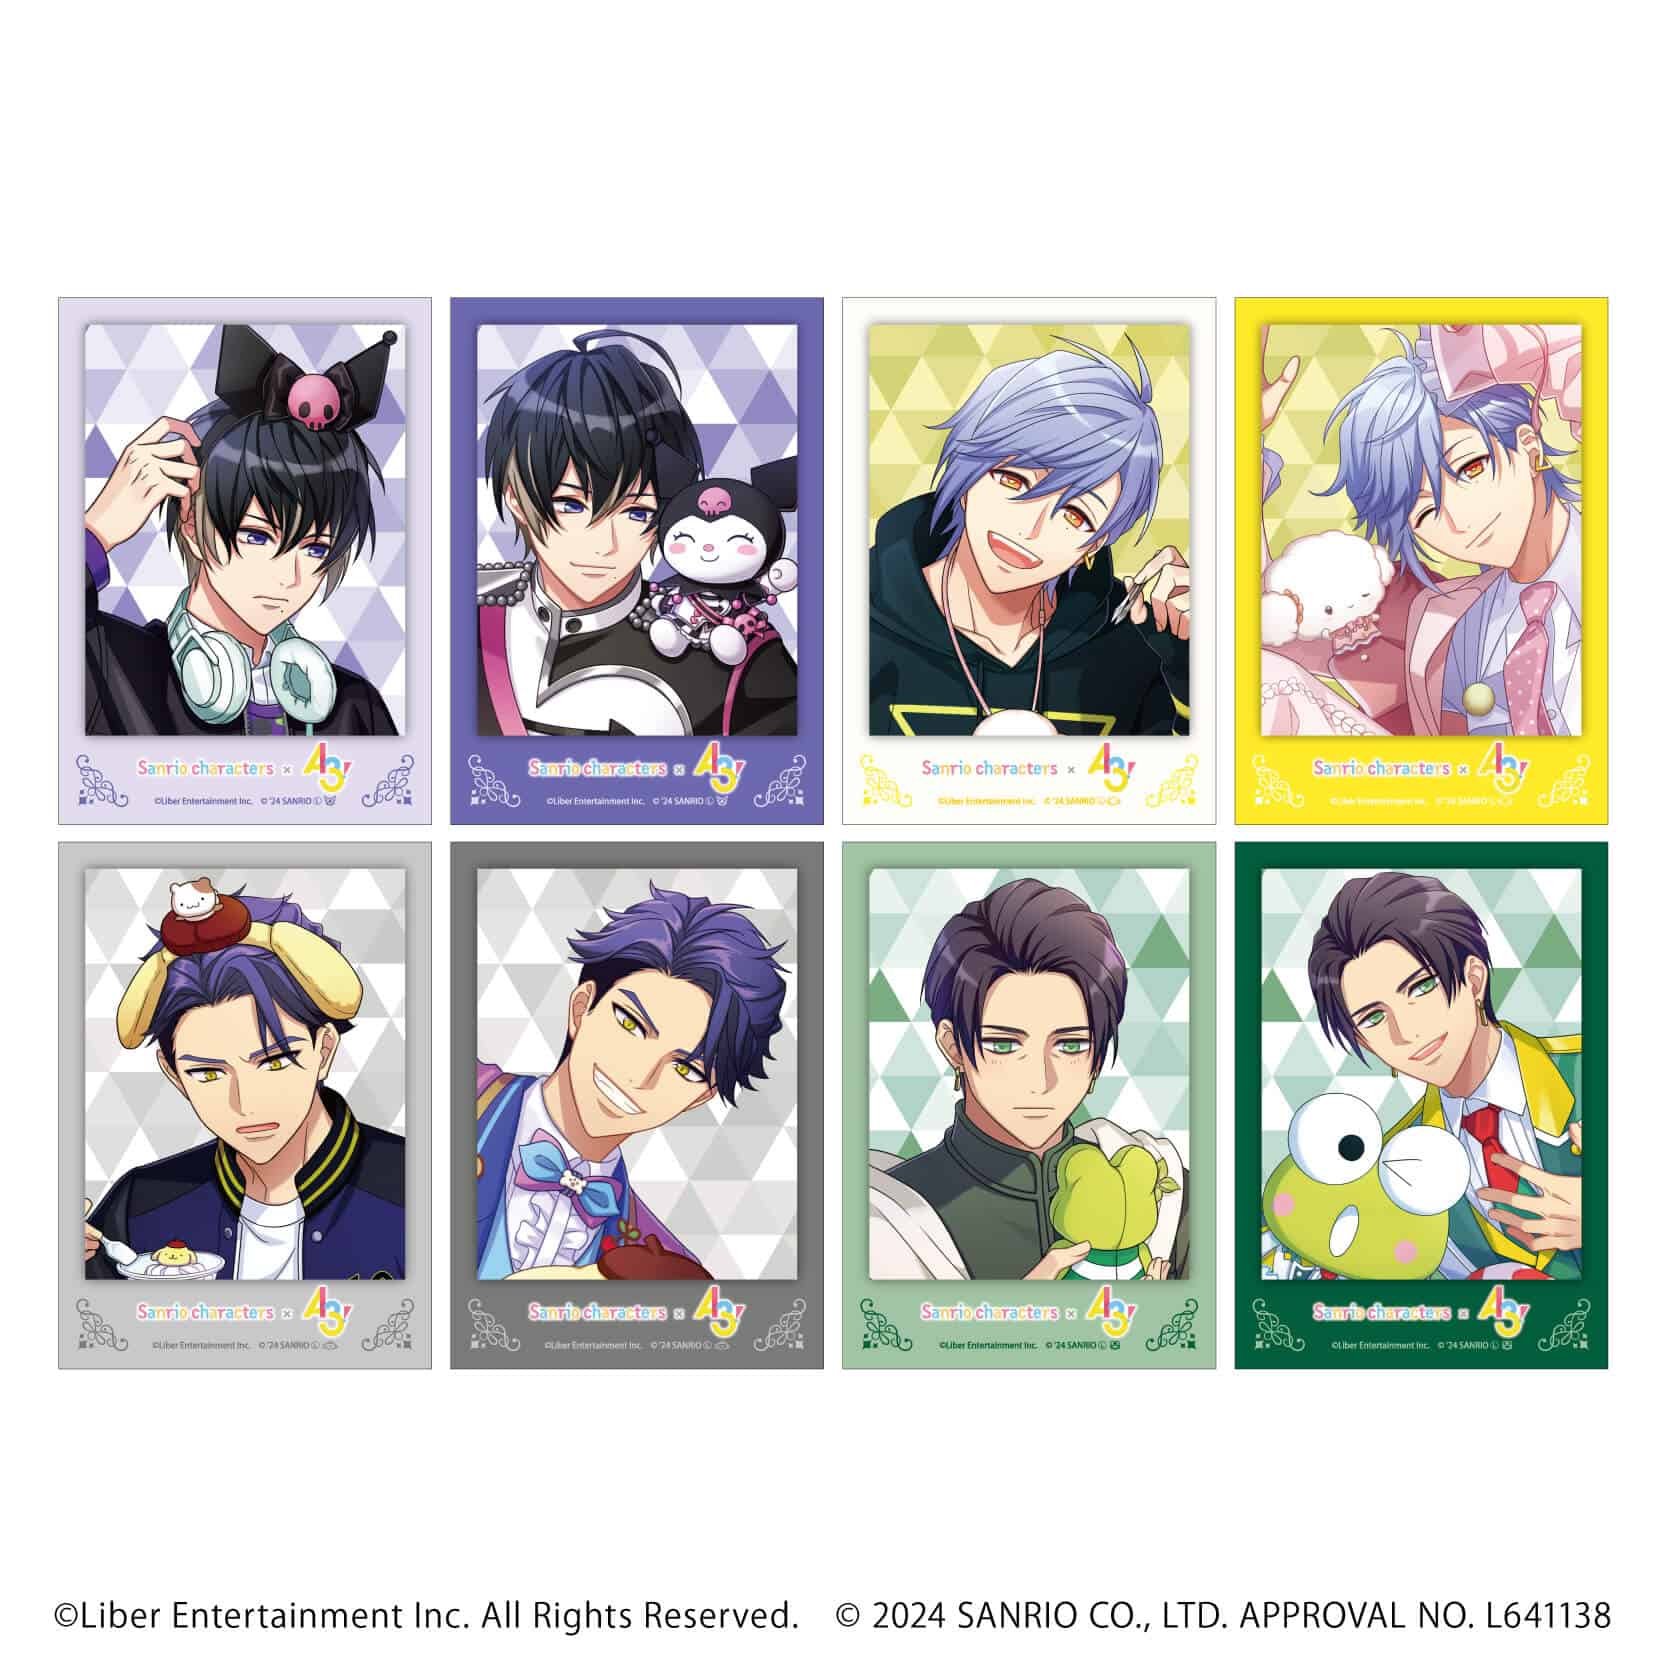 ミニフォト「A3!×Sanrio characters」04/コンプリートBOX(全8種)(公式イラスト)